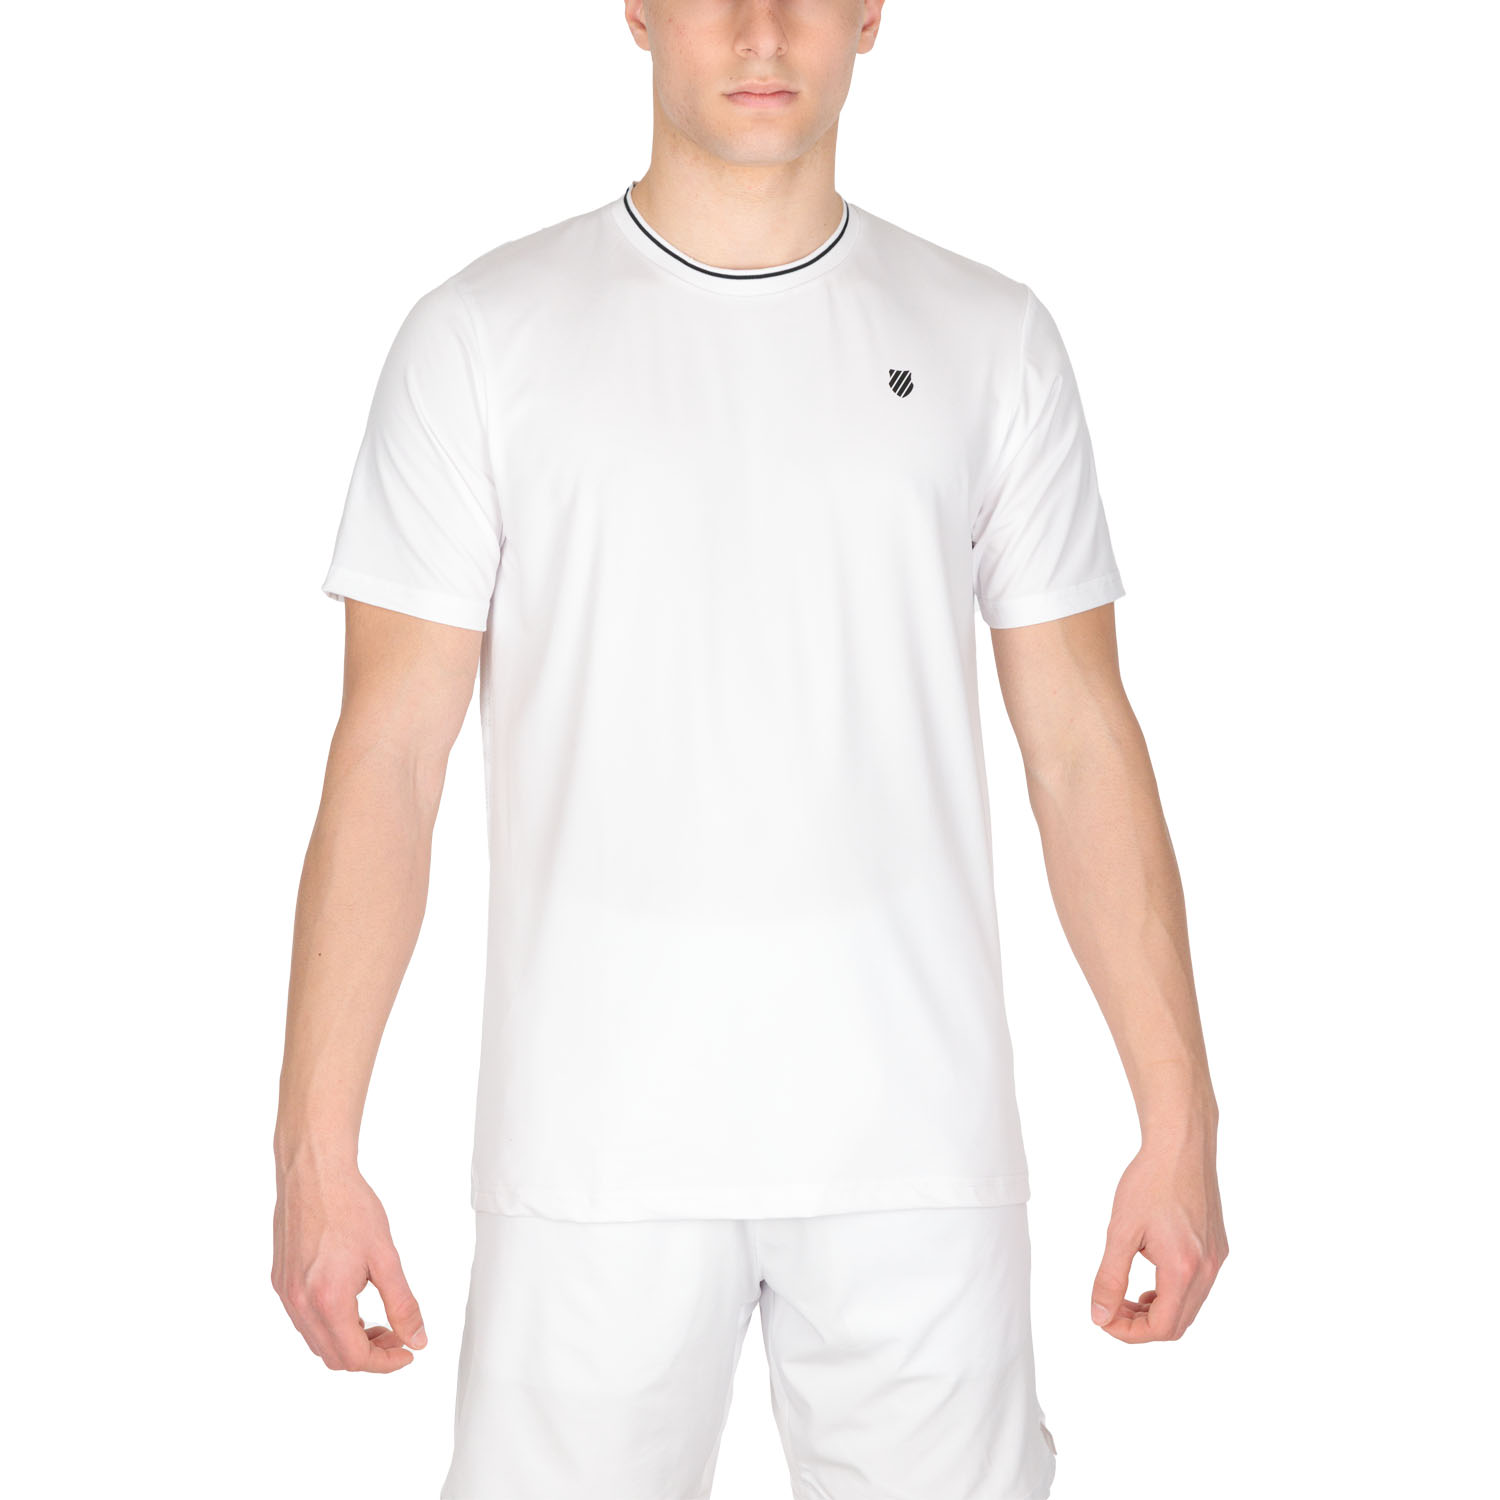 K-Swiss Hypercourt Mesh Crew T-Shirt - White